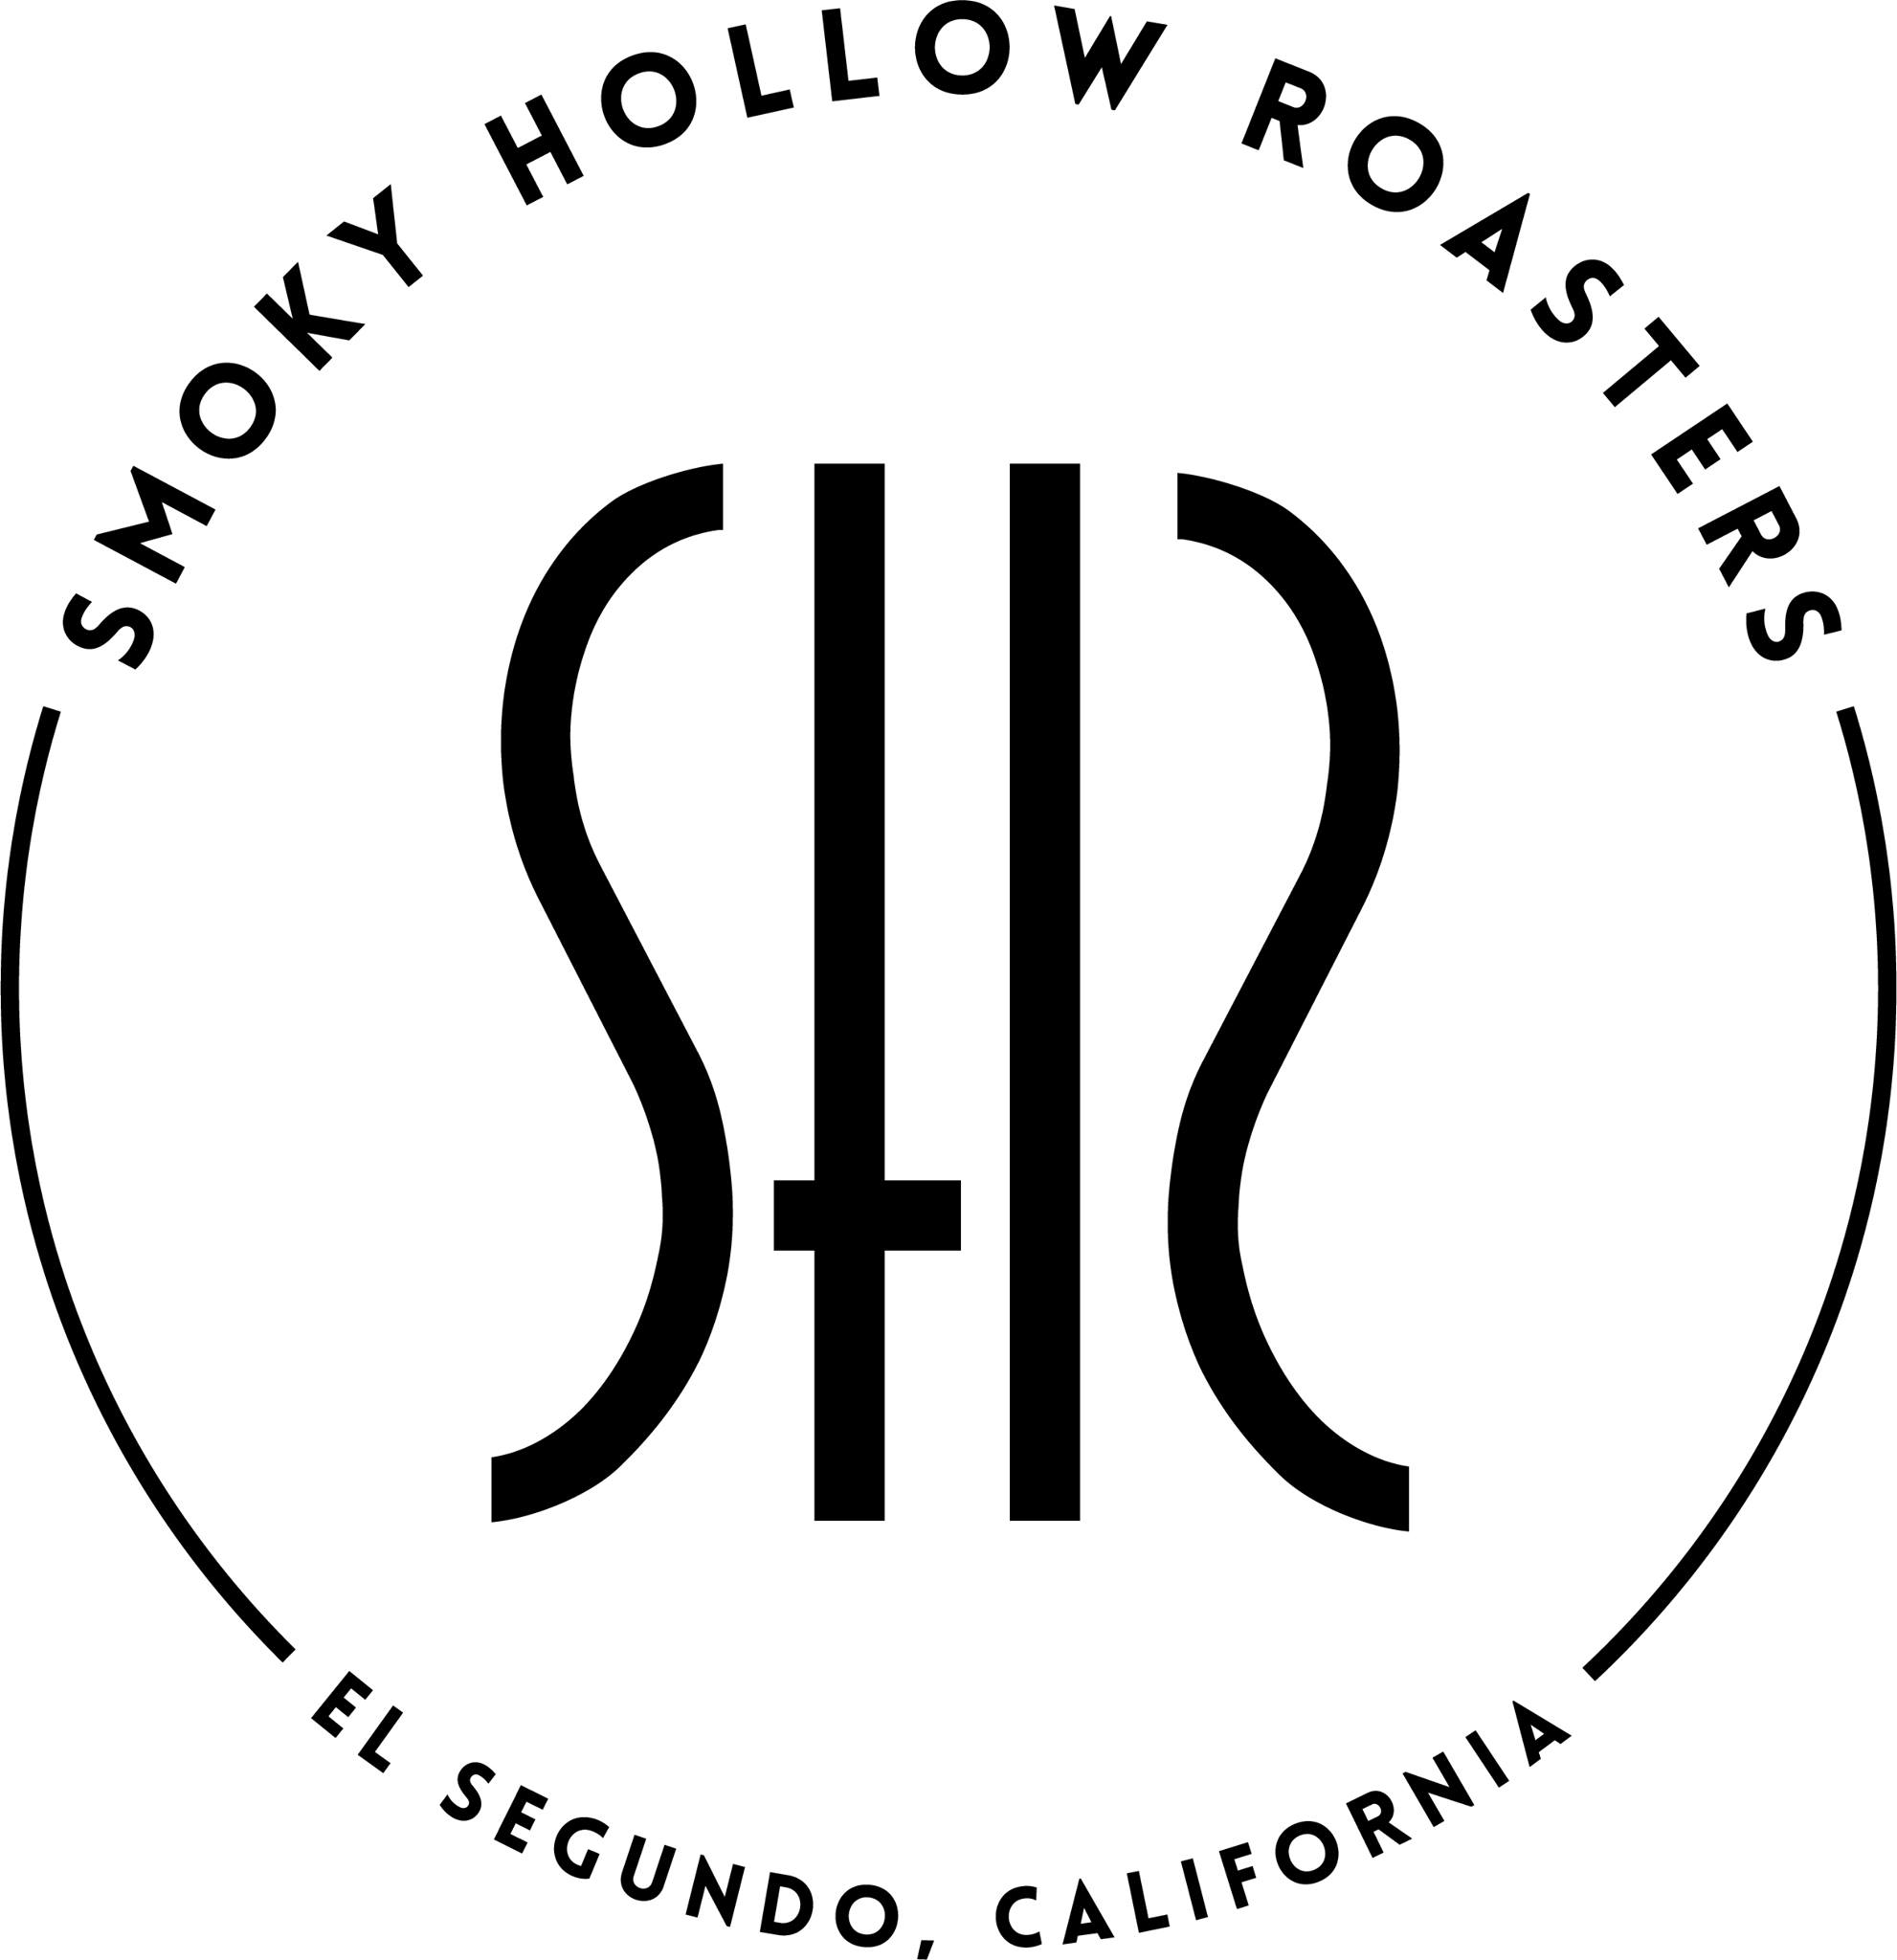 Smoky Hollow Roasters